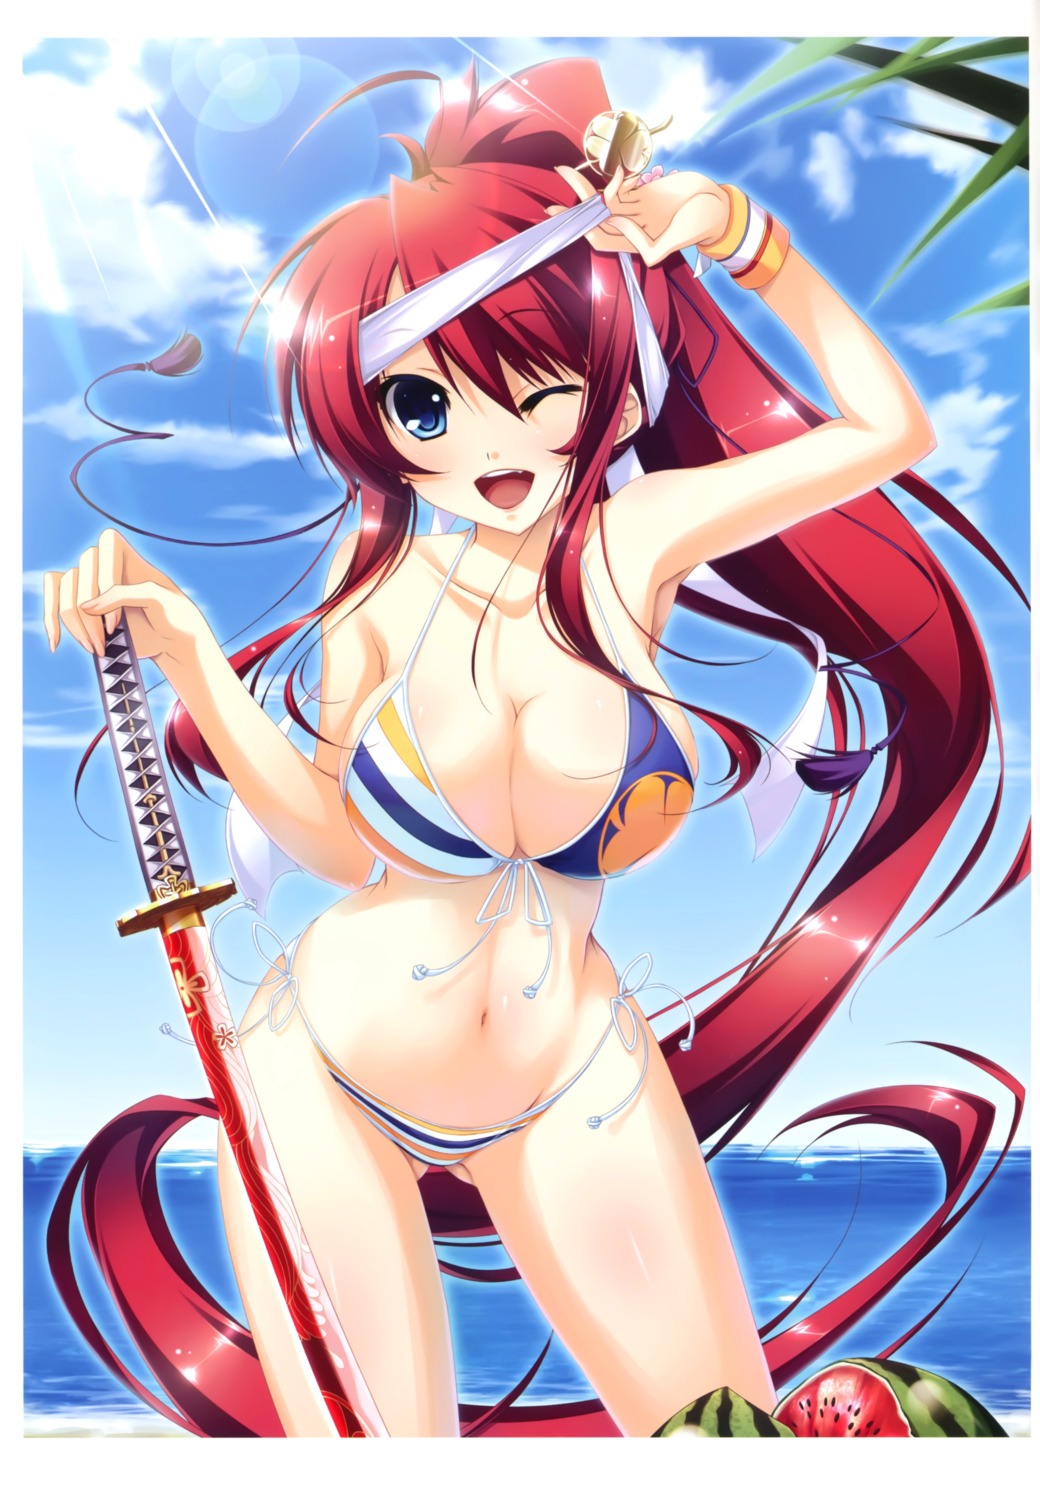 appare!_tenka_gomen bikini cleavage katagiri_hinata swimsuits sword tokugawa_yoshine